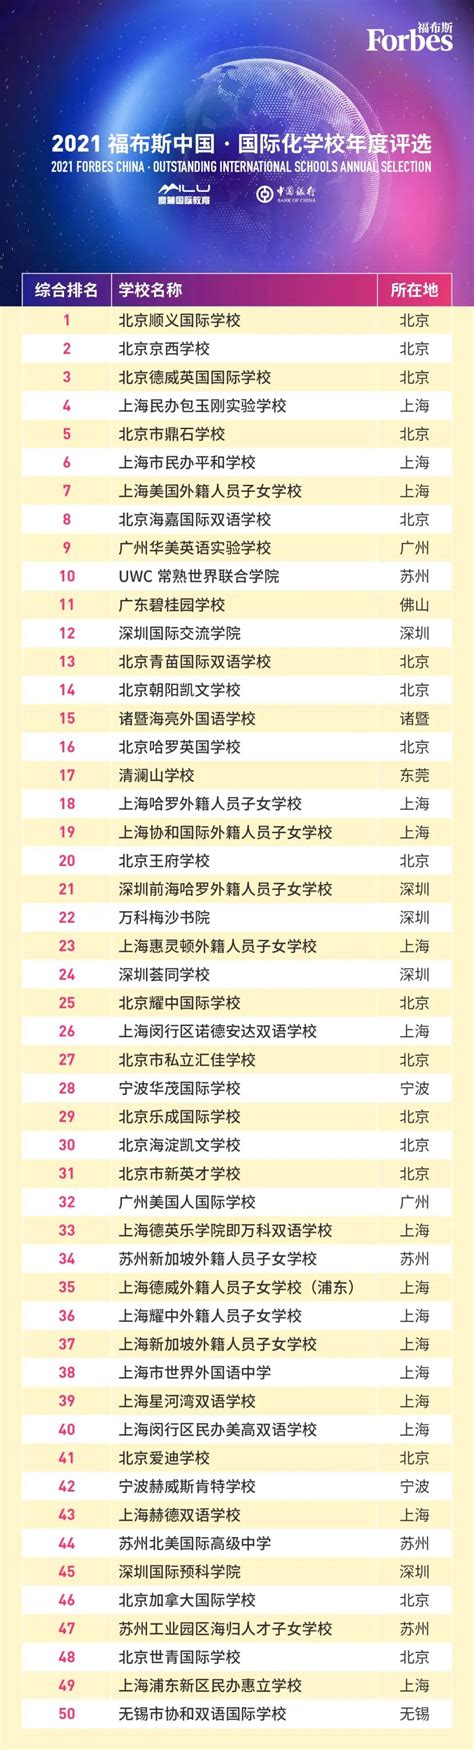 全国国际学校排名前十的学校2022年海外录取一览表（下）-北京中考网-北达中考复读学校